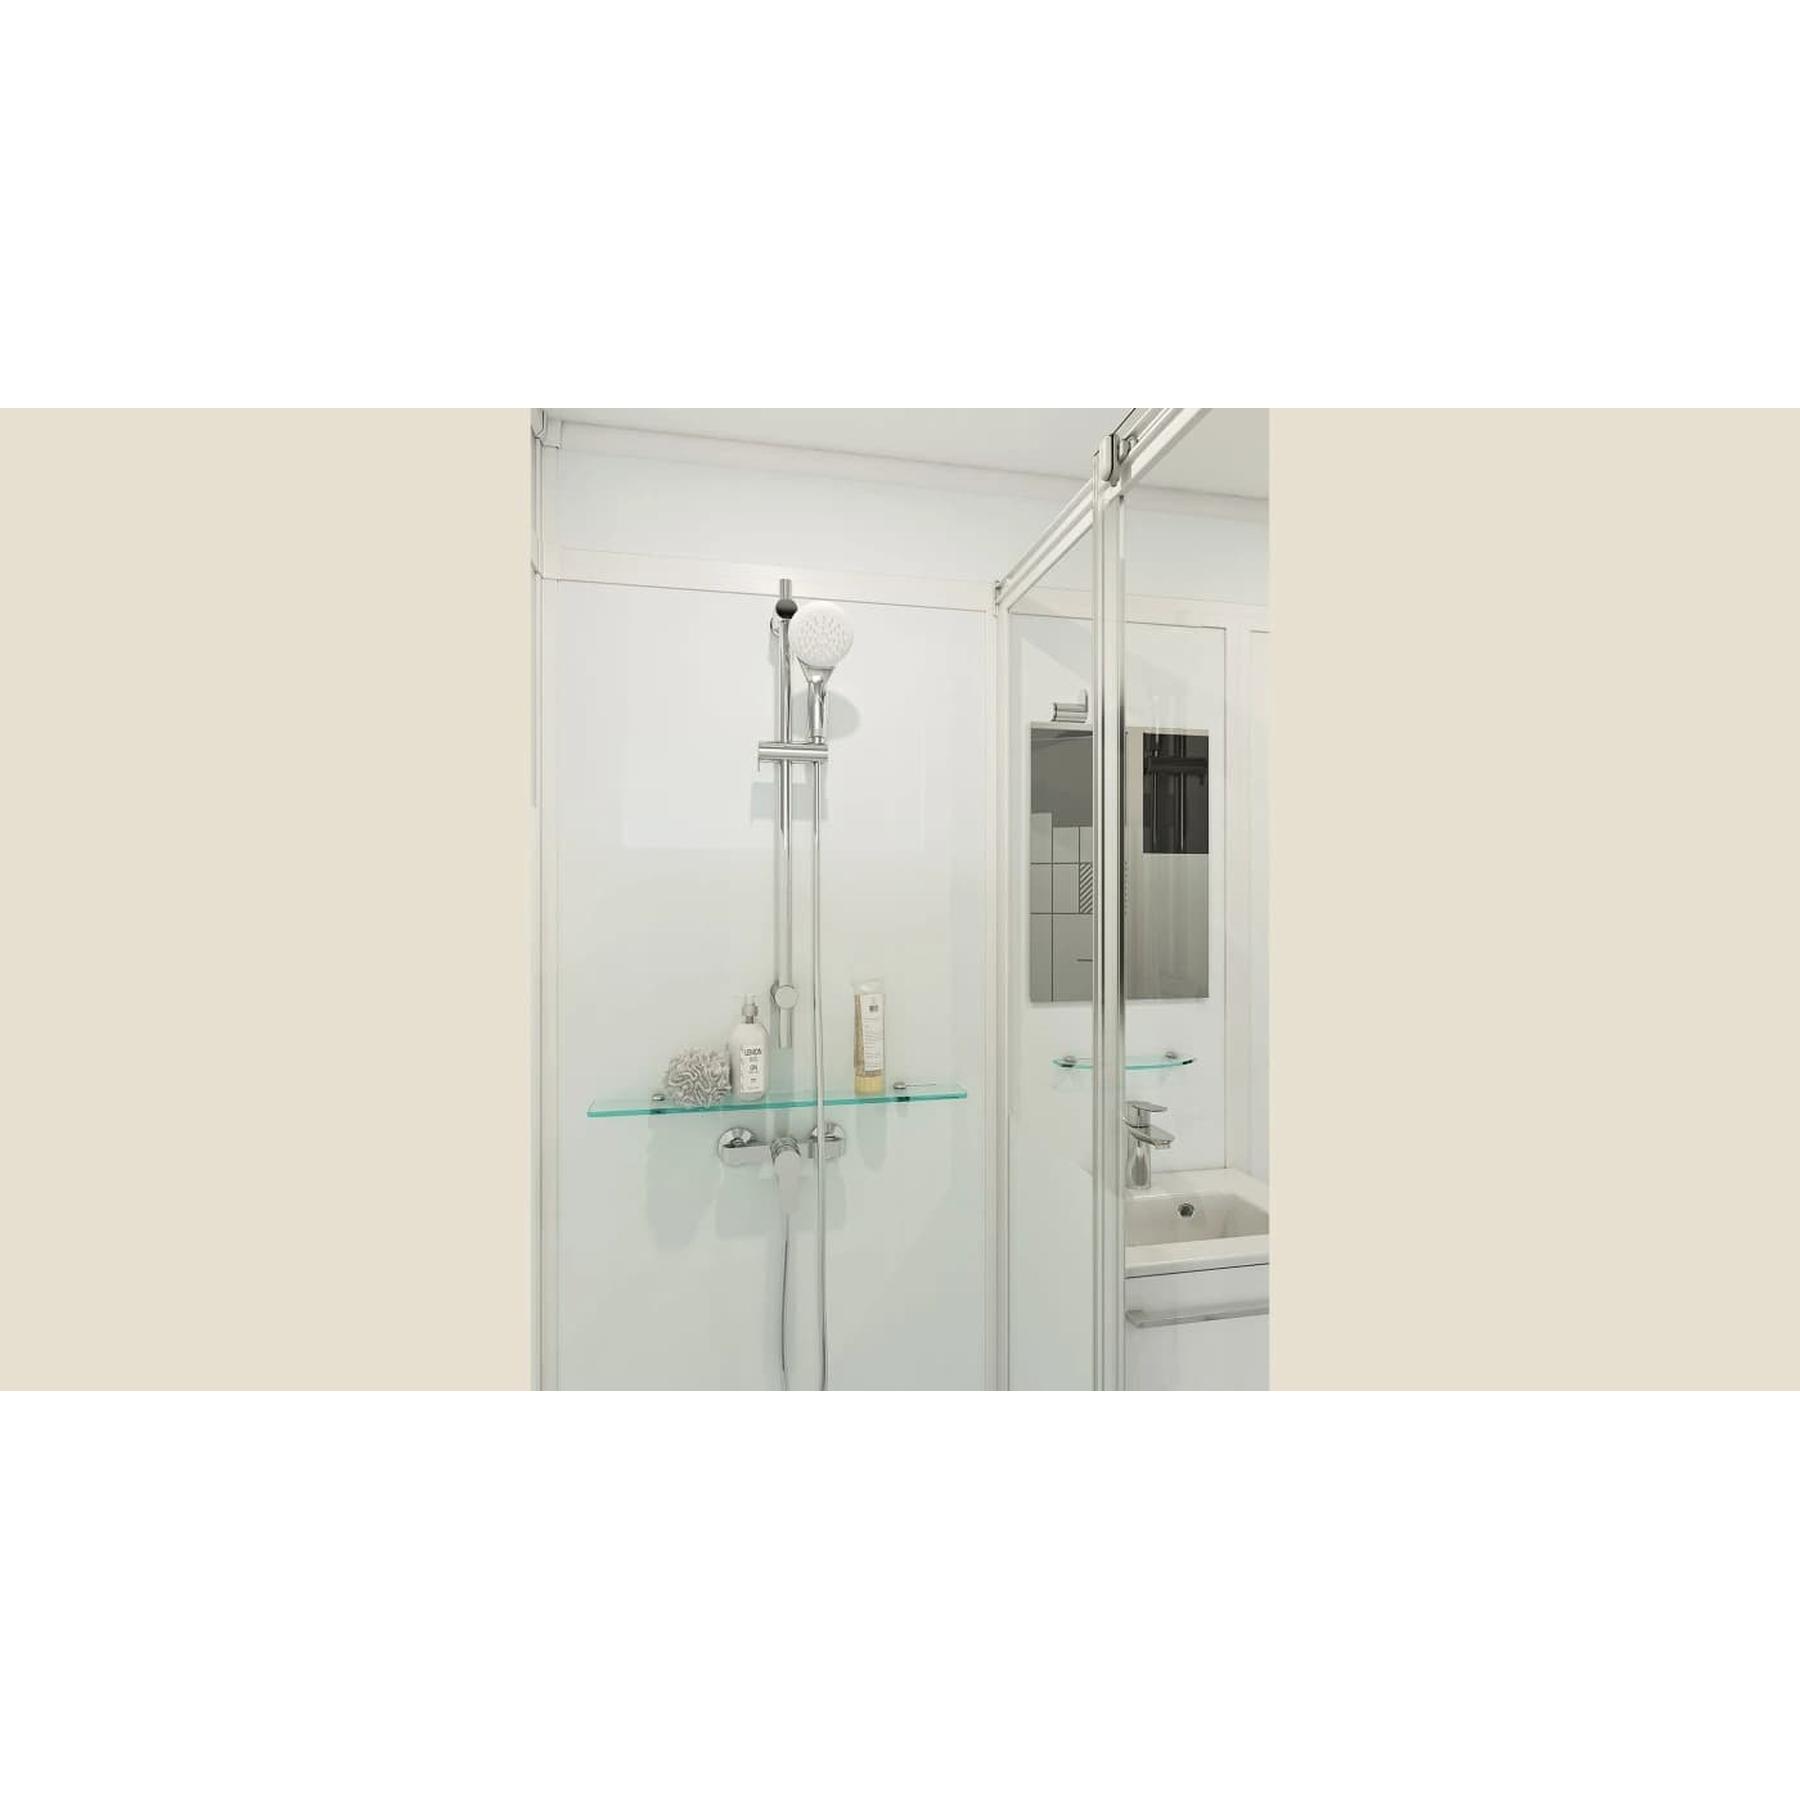 Salle de bain d'angle MODULO Luxe 170x100 VB pompe intégrée douche à droite. meuble vasque et sèche serviettes gauche profilé noir verre blanc dépoli